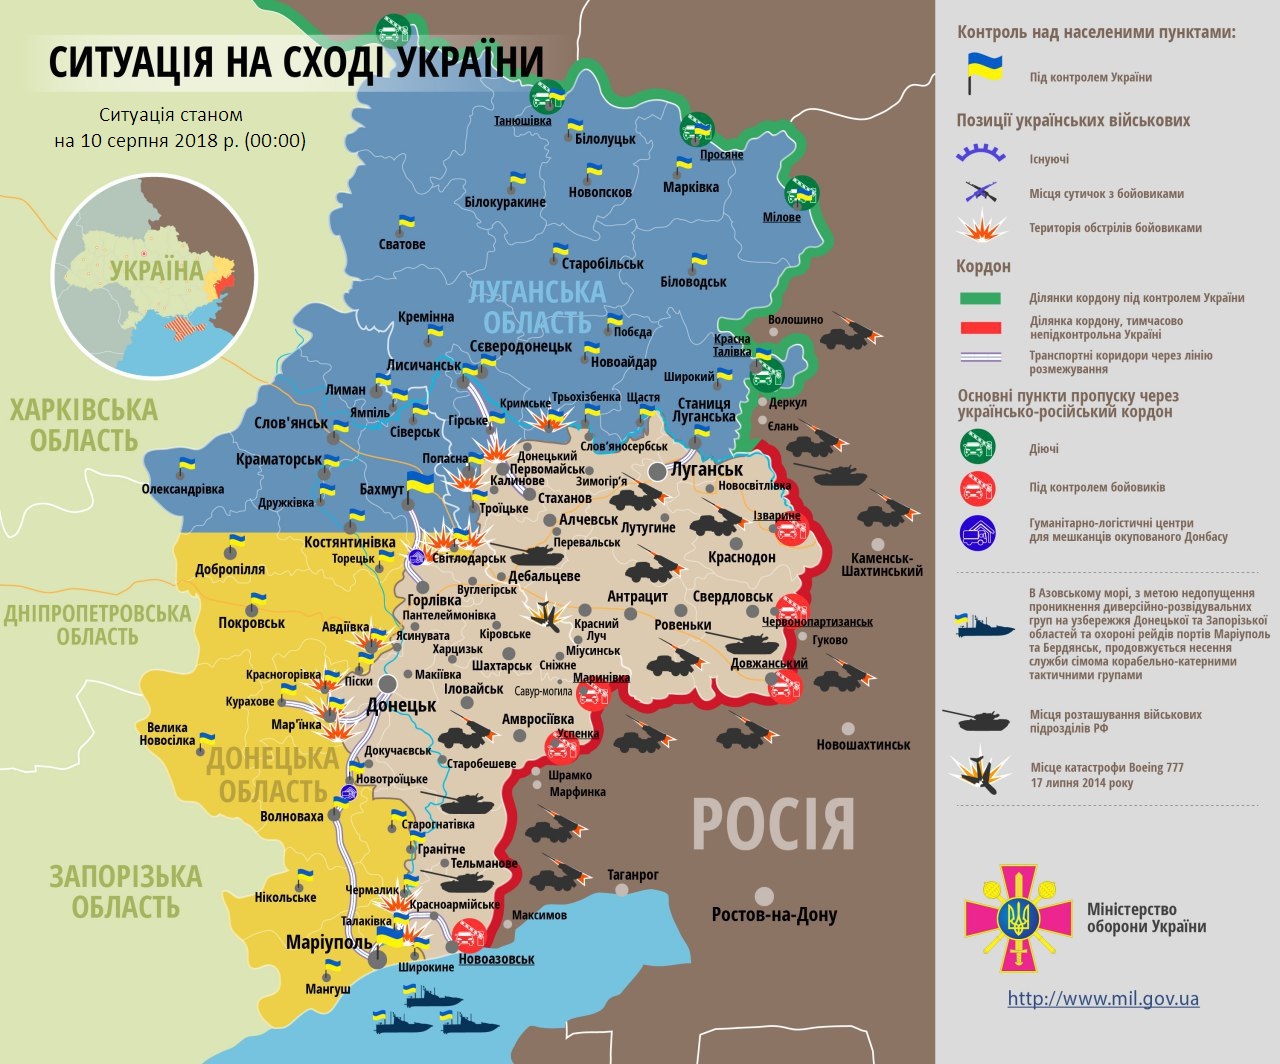 Российская армия терпит крупное поражение на Донбассе, много убитых: боевая сводка и карта ООС от 10.08.2018